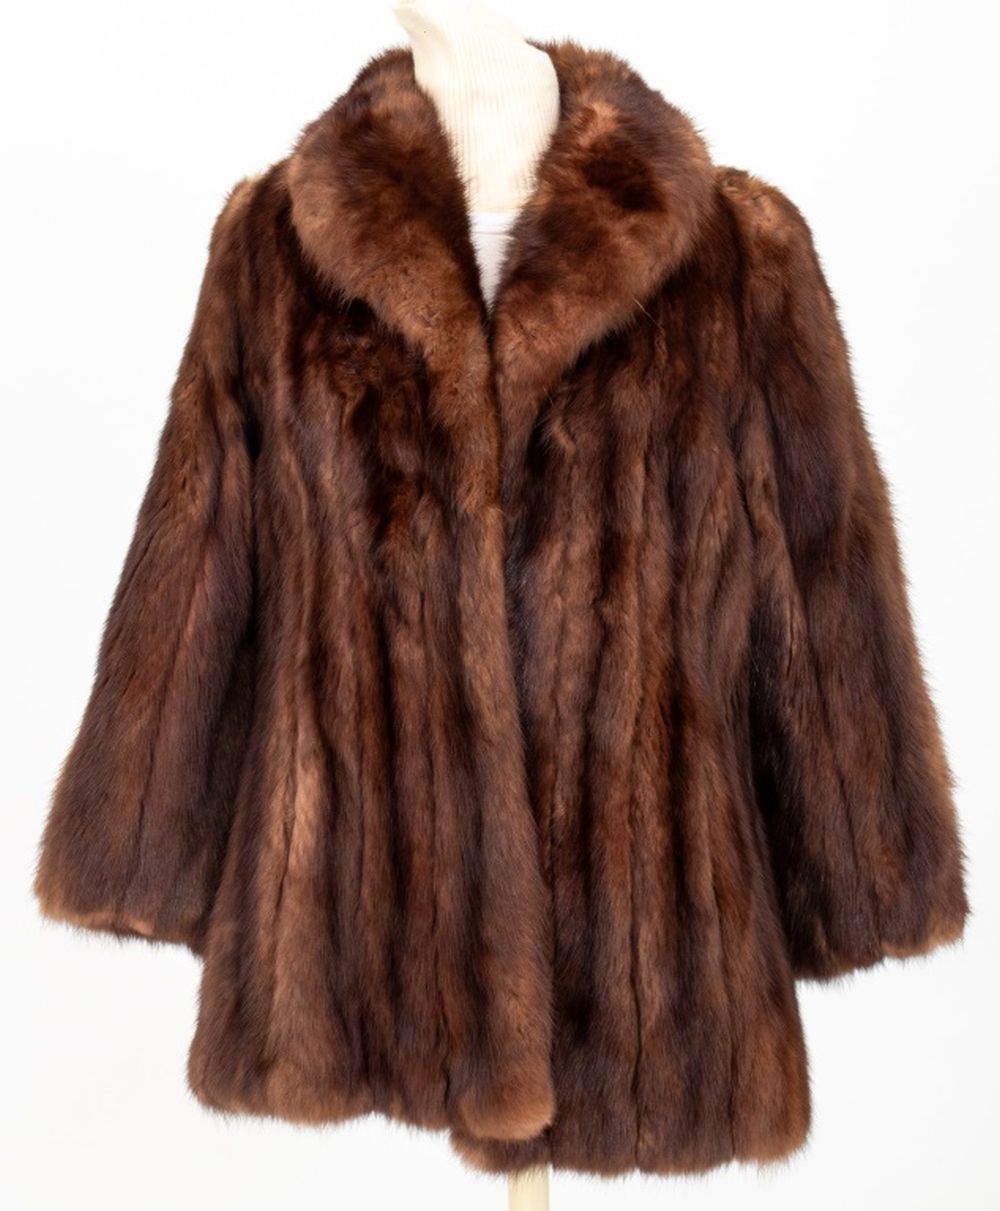 MINK FUR COAT Mink fur coat monogrammed 3b4c92